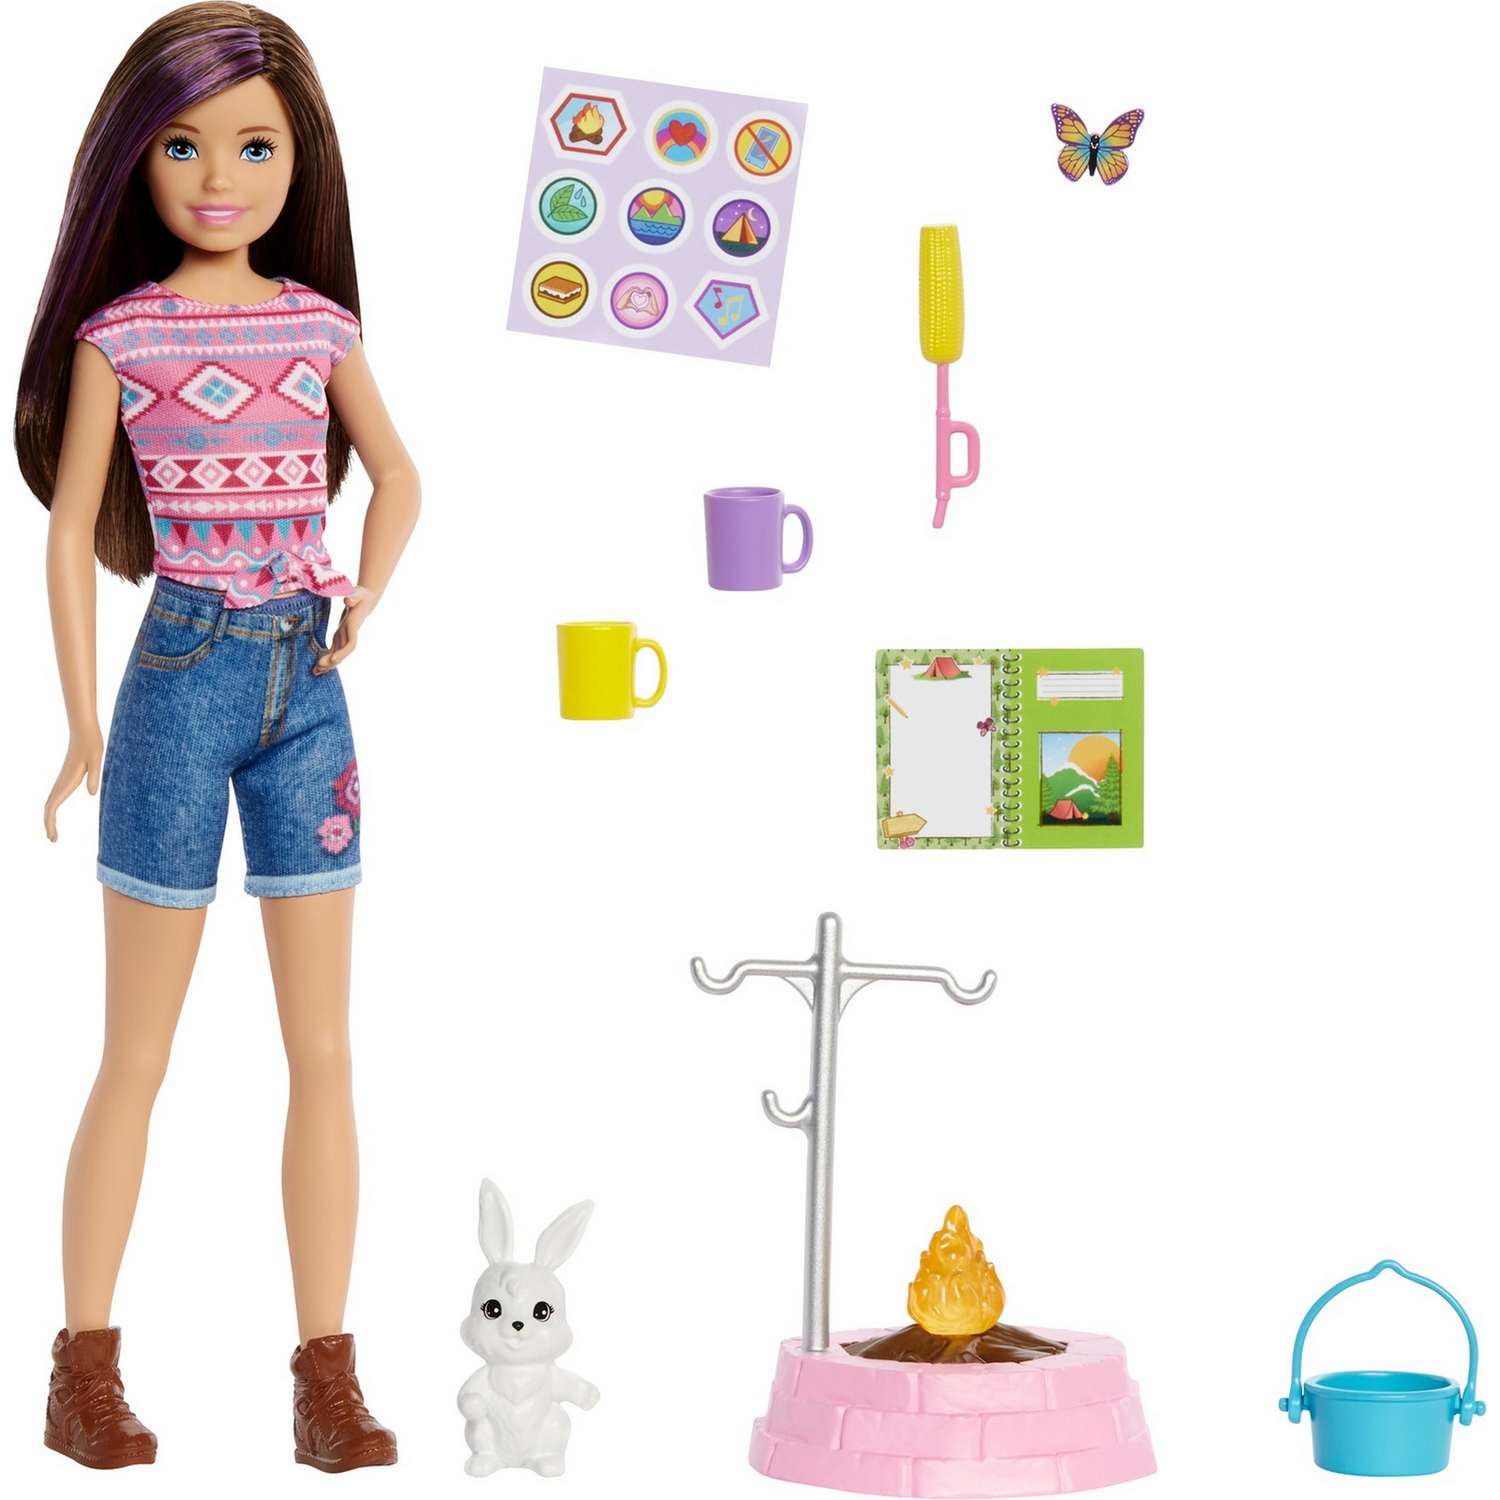 Набор игровой Barbie Кемпинг Скиппер кукла с питомцем и аксессуарами HDF71 HDF71 - фото 1